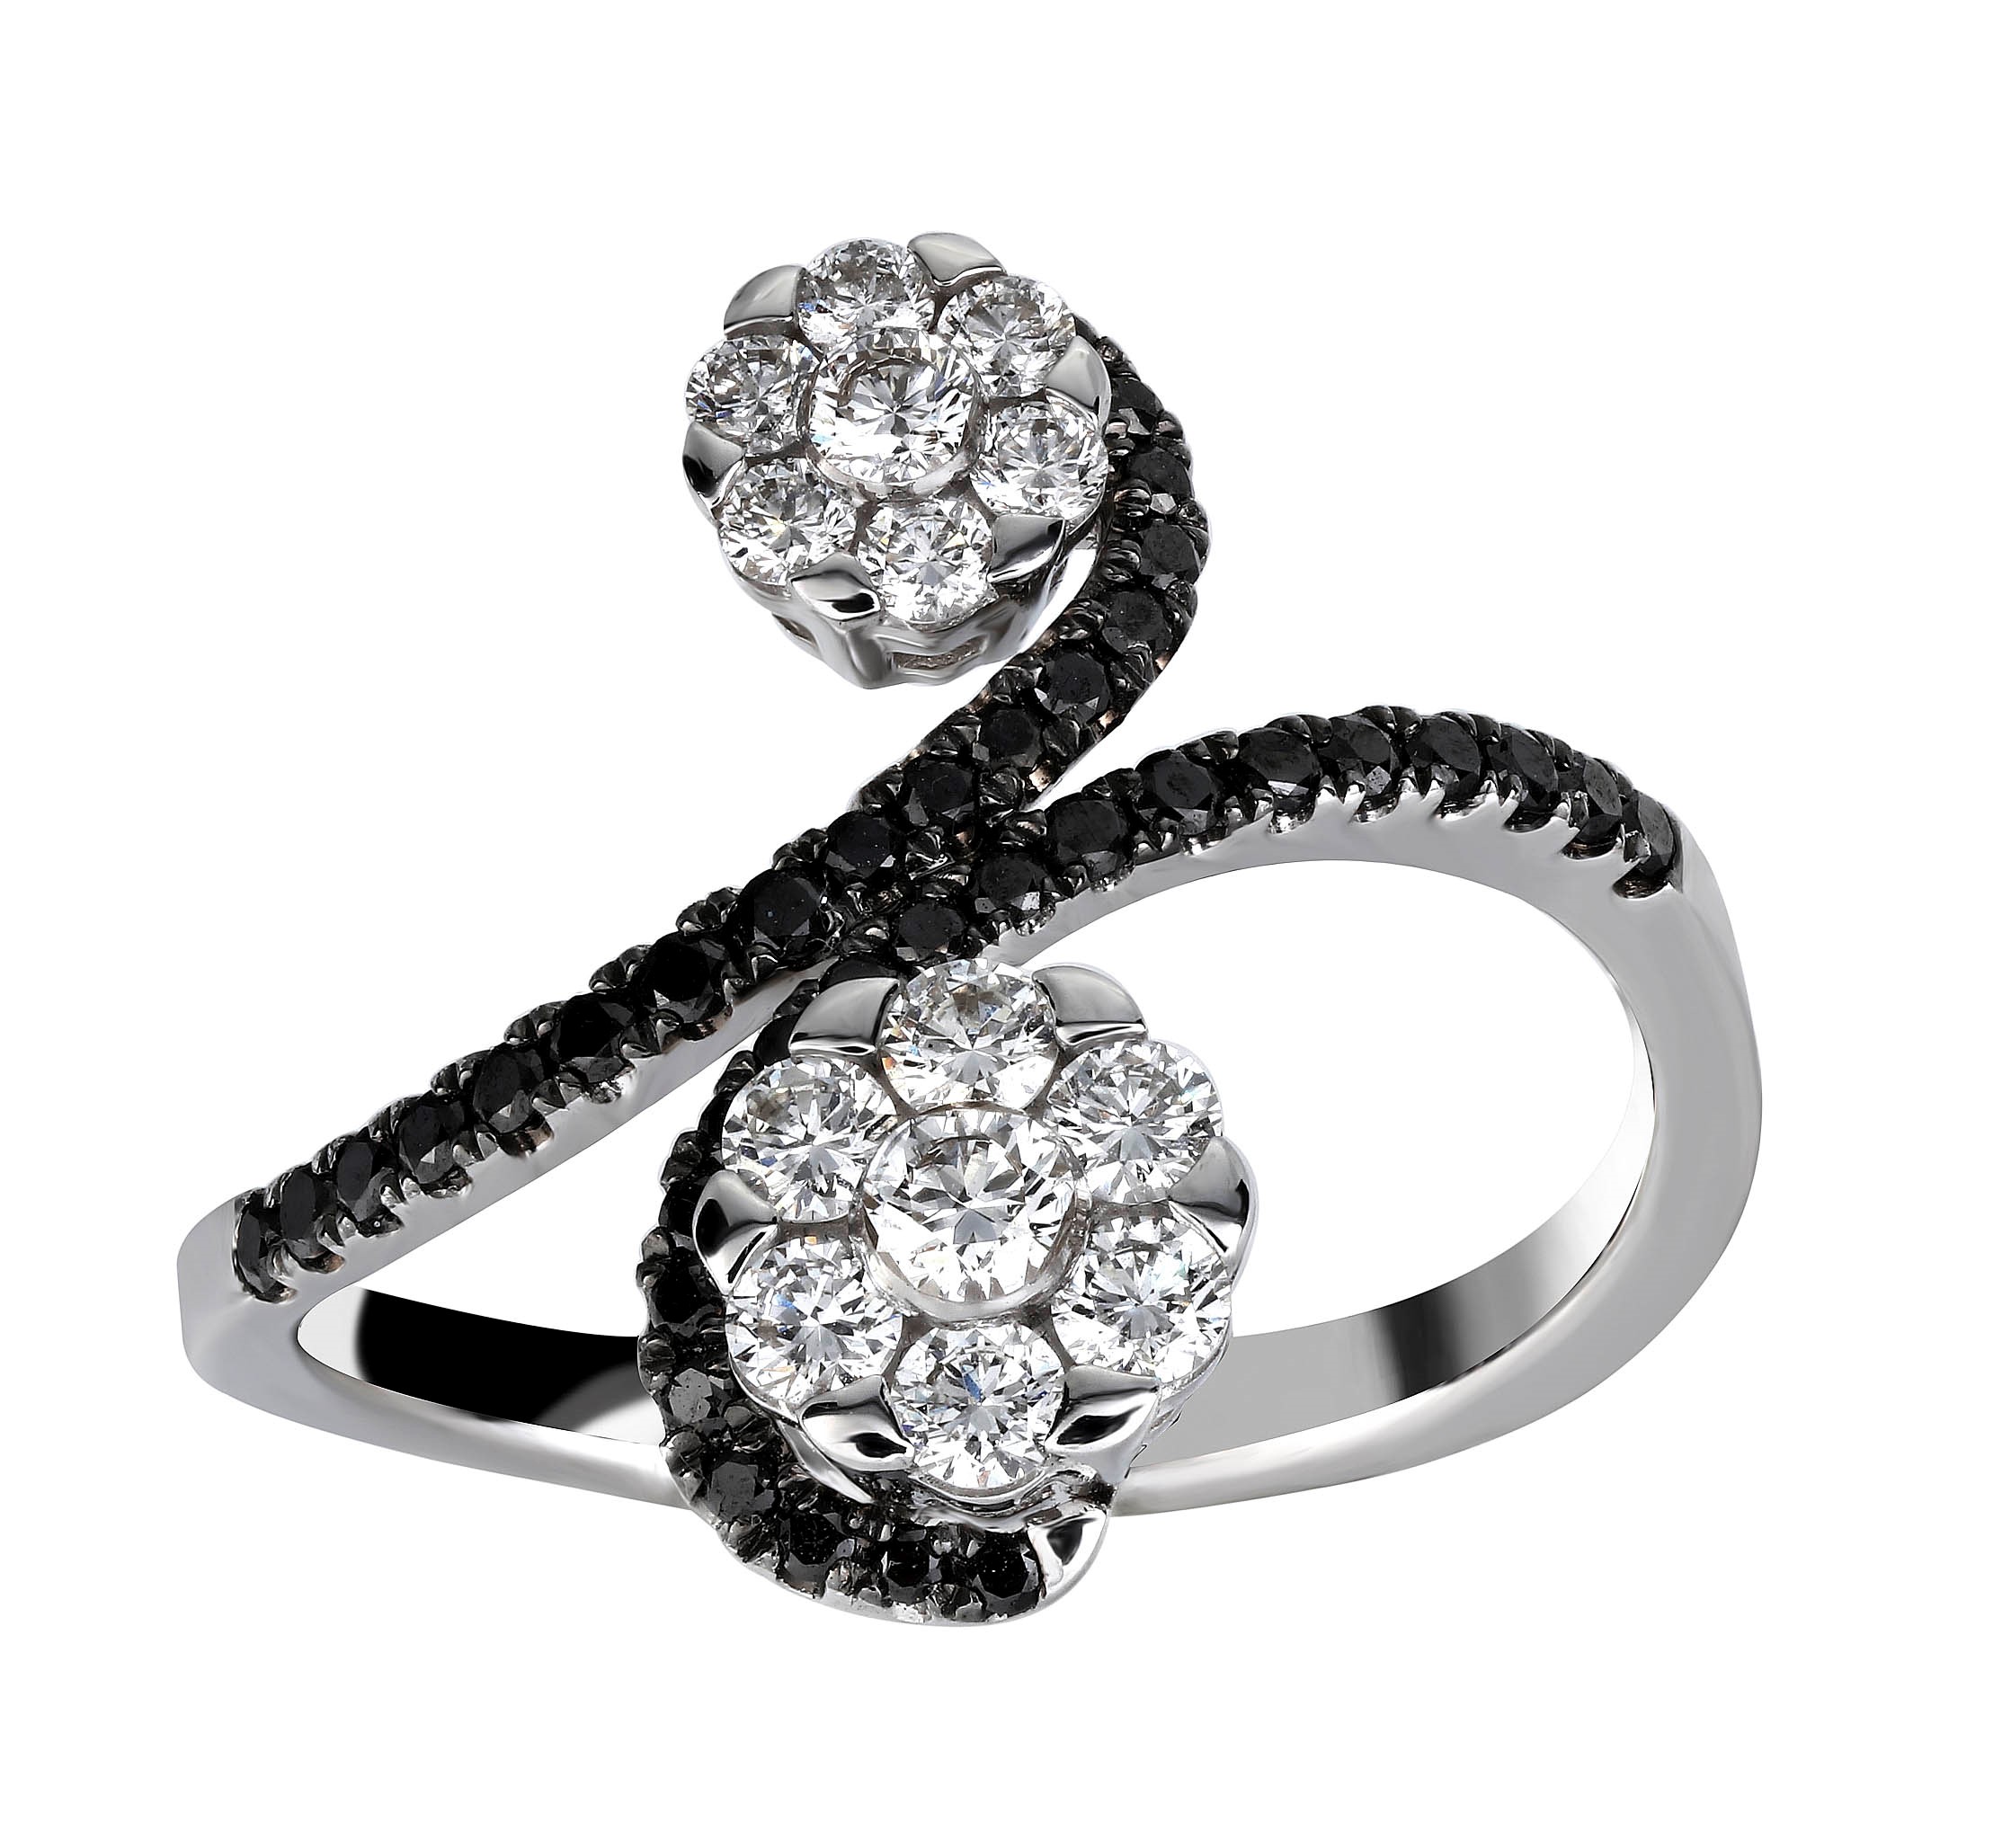 نمونه ای از مدل های جواهر با الماس سیاه در گالری هاتف ساعتچی